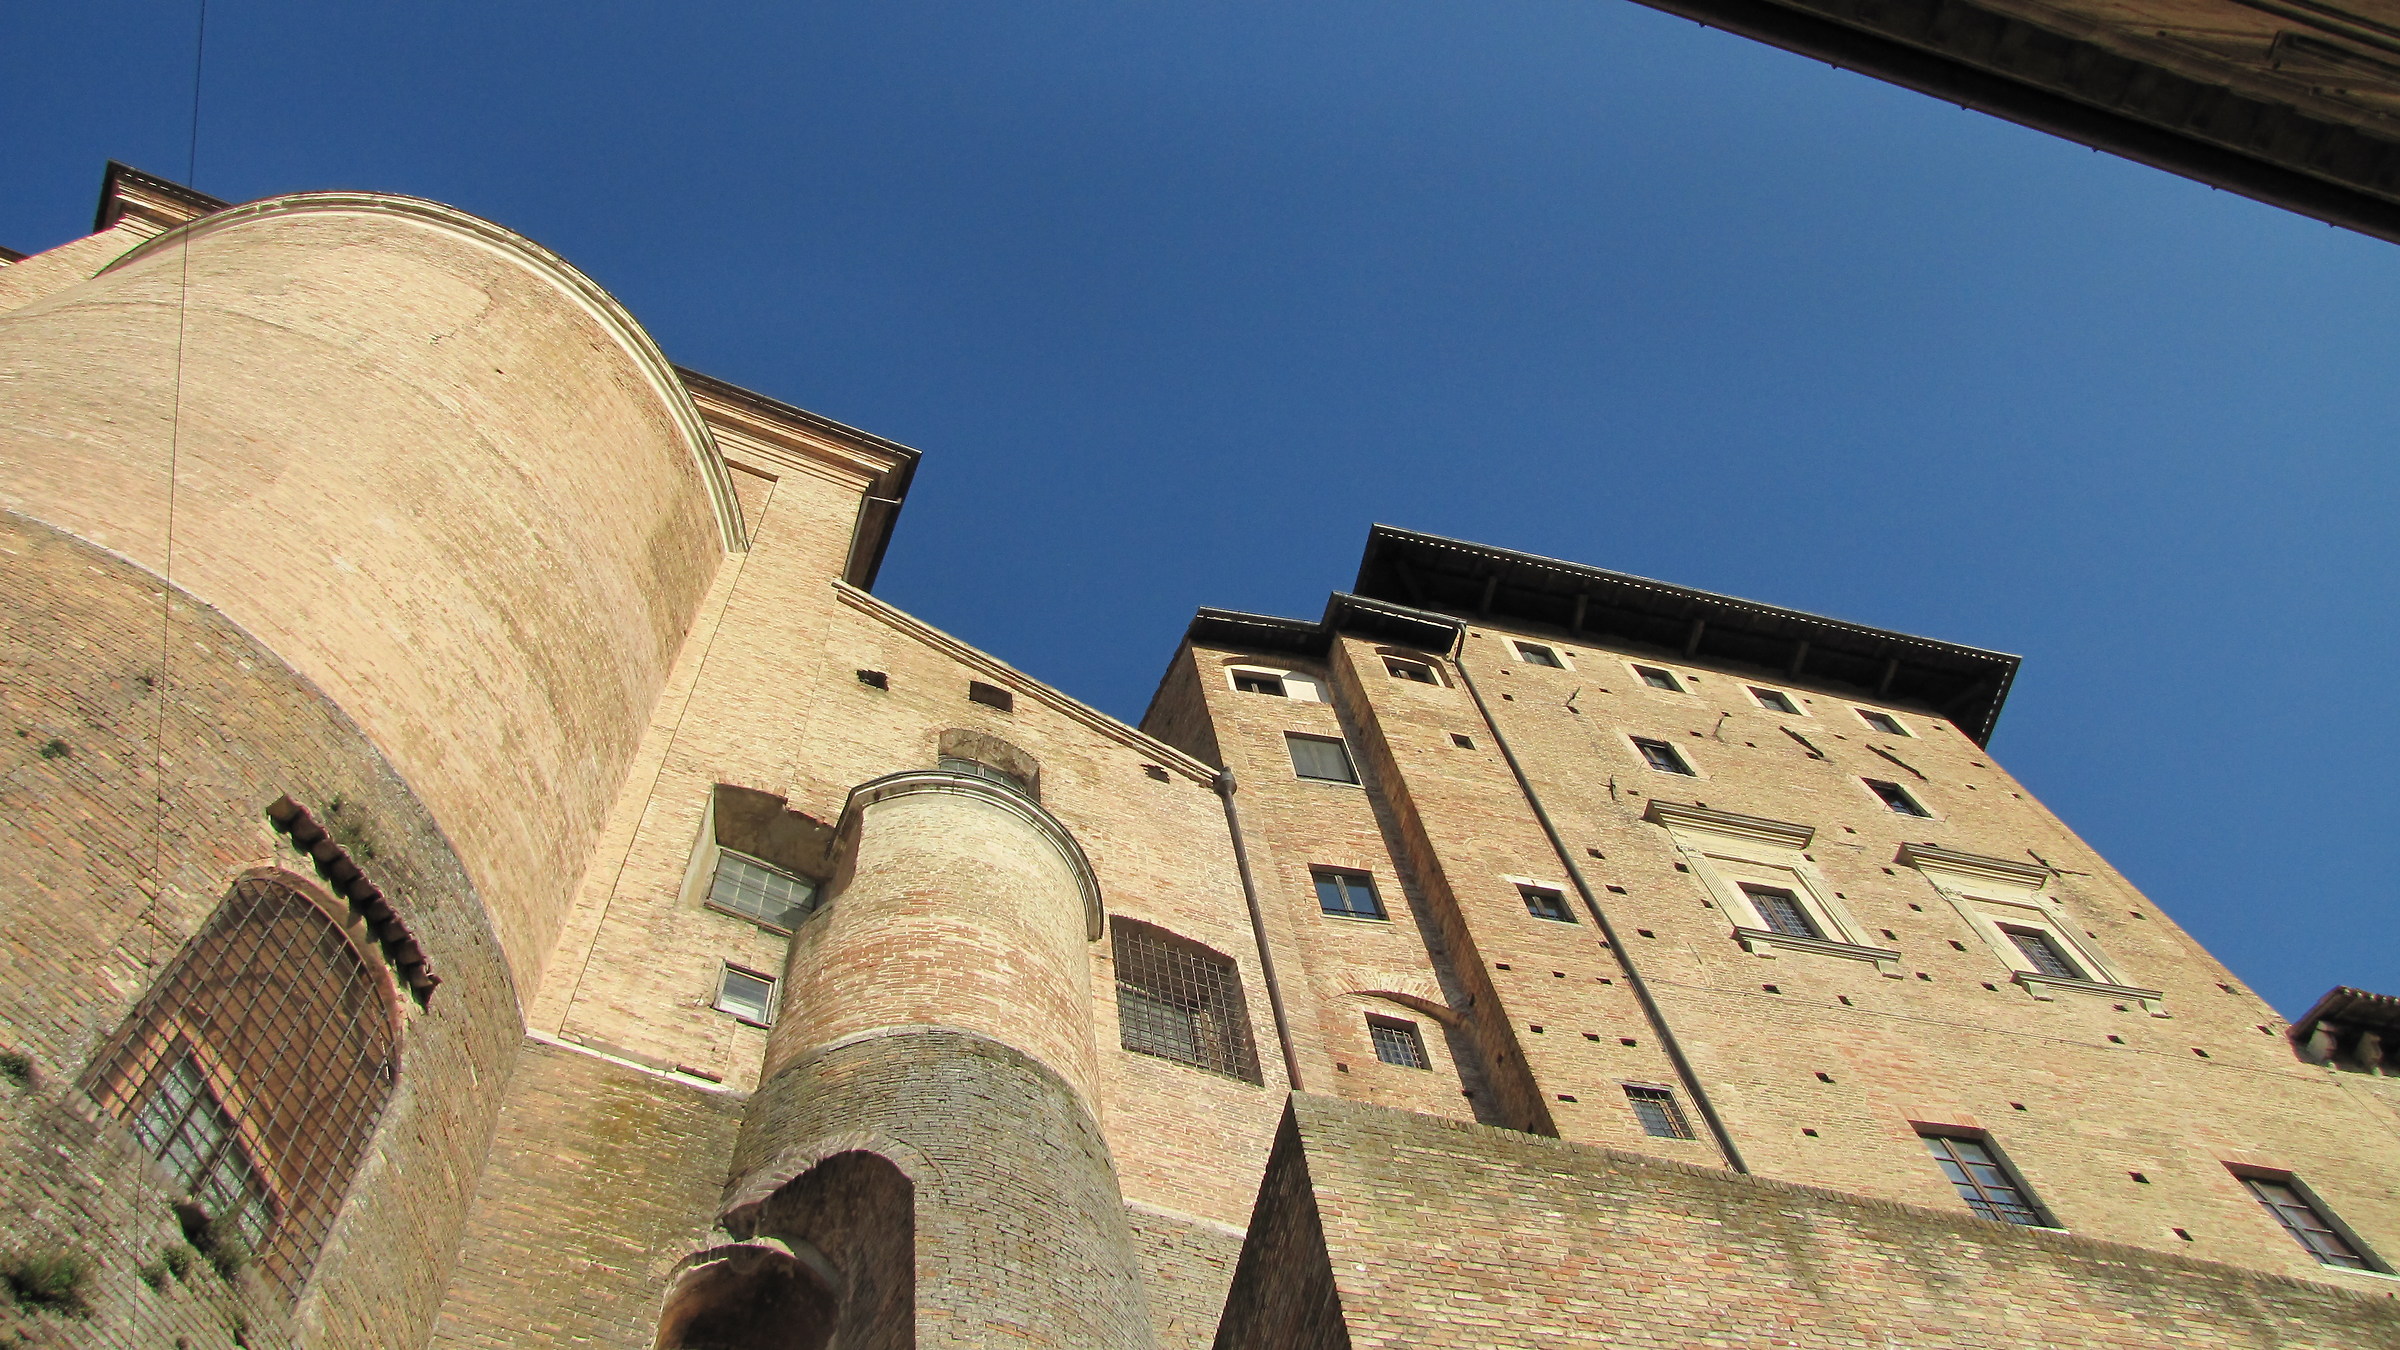 Urbino glimpse...